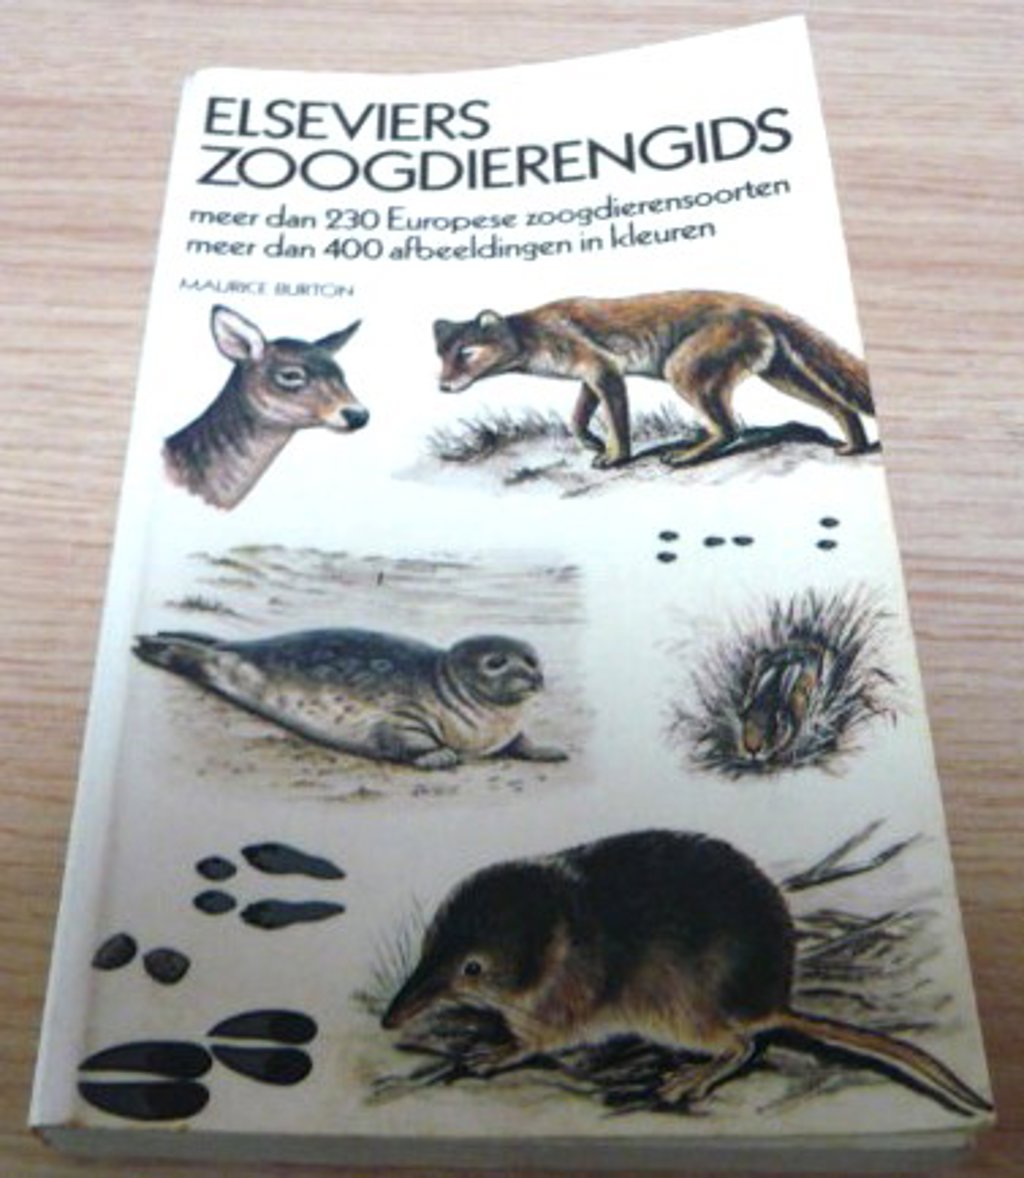 Elseviers zoogdierengids voor 5,50 euro